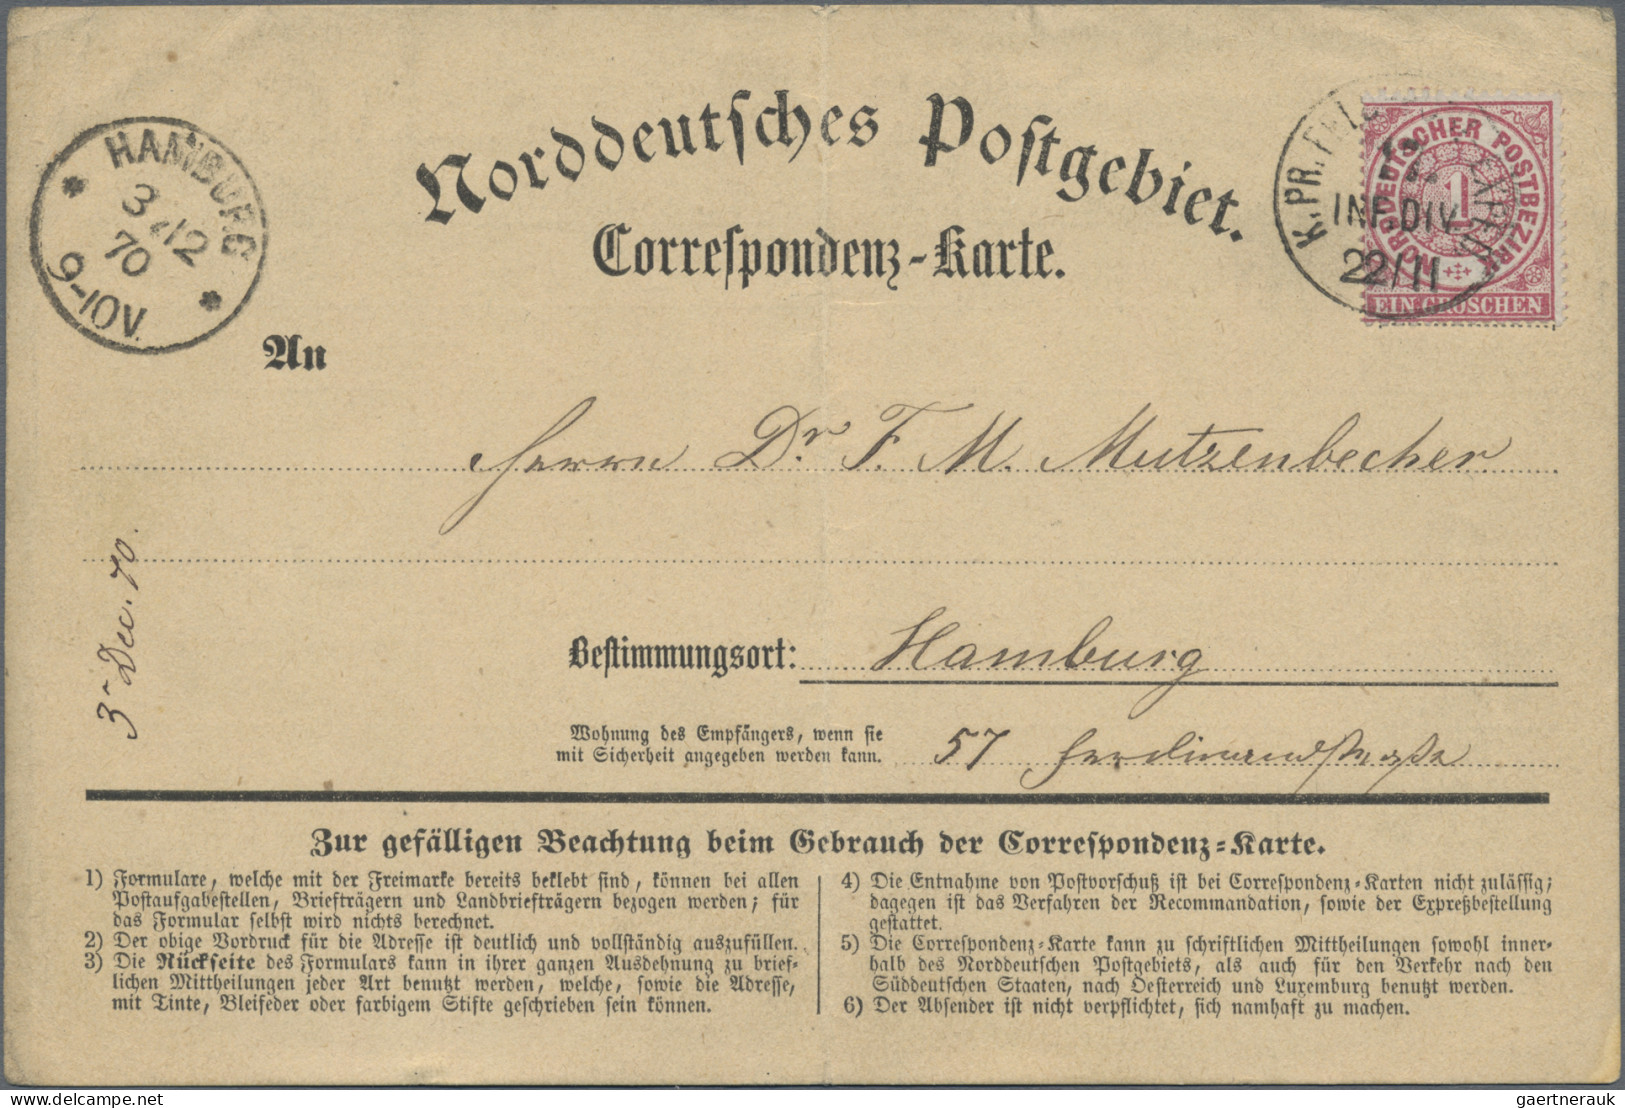 Norddeutscher Bund - Marken und Briefe: 1869, 1 Gr. karmin, insgesamt 5 Korrespo